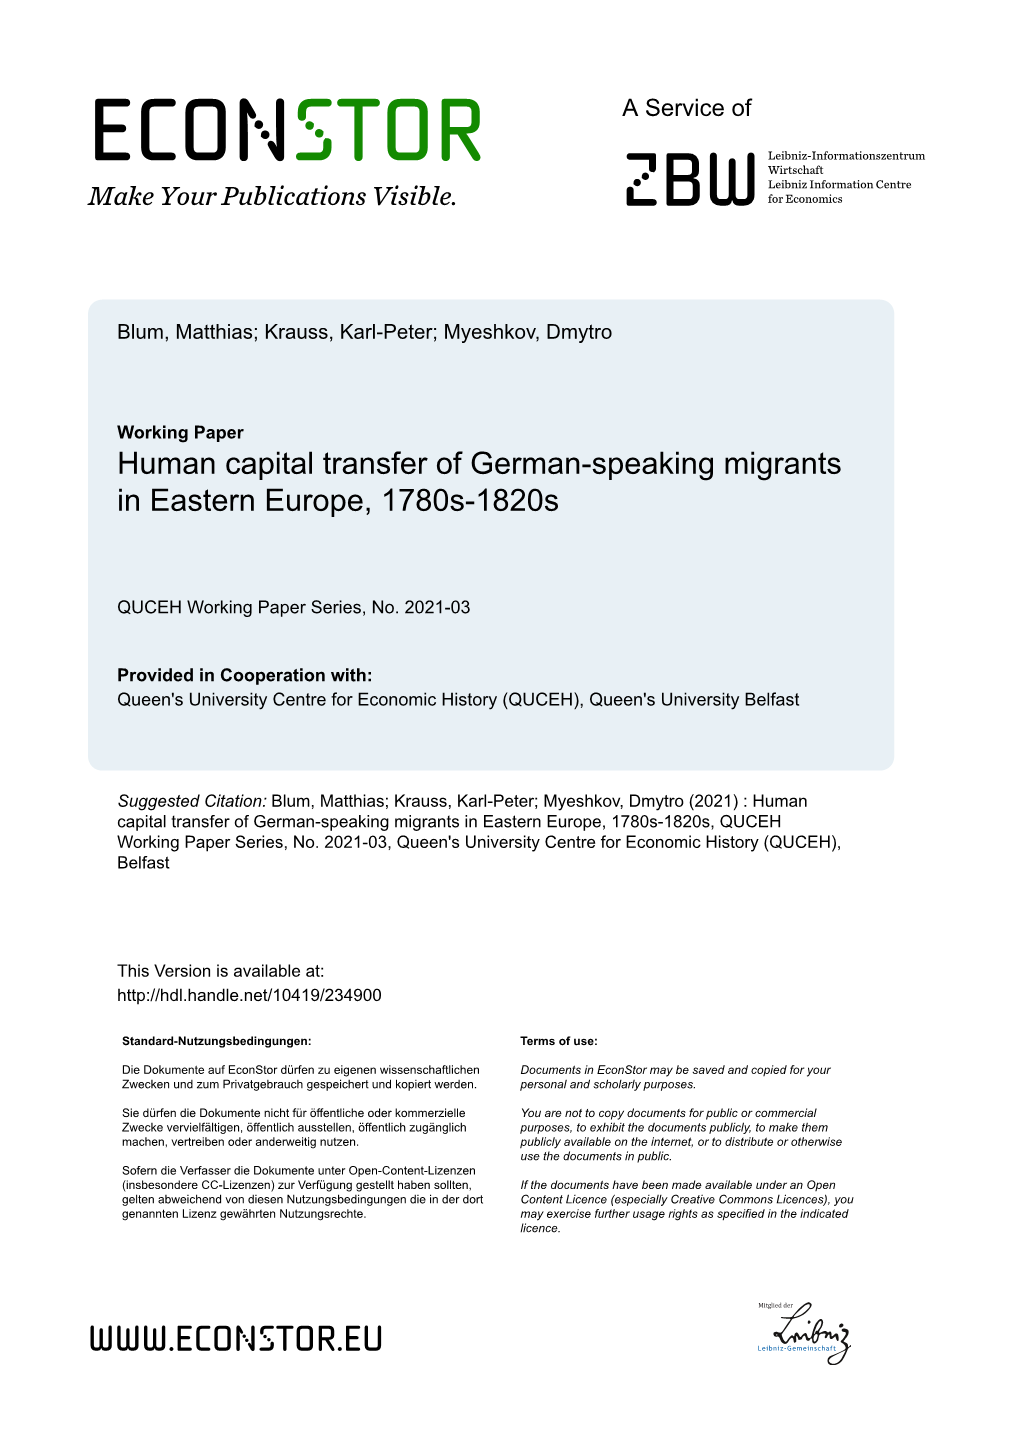 Human Capital Transfer of German-Speaking Migrants in Eastern Europe, 1780S-1820S